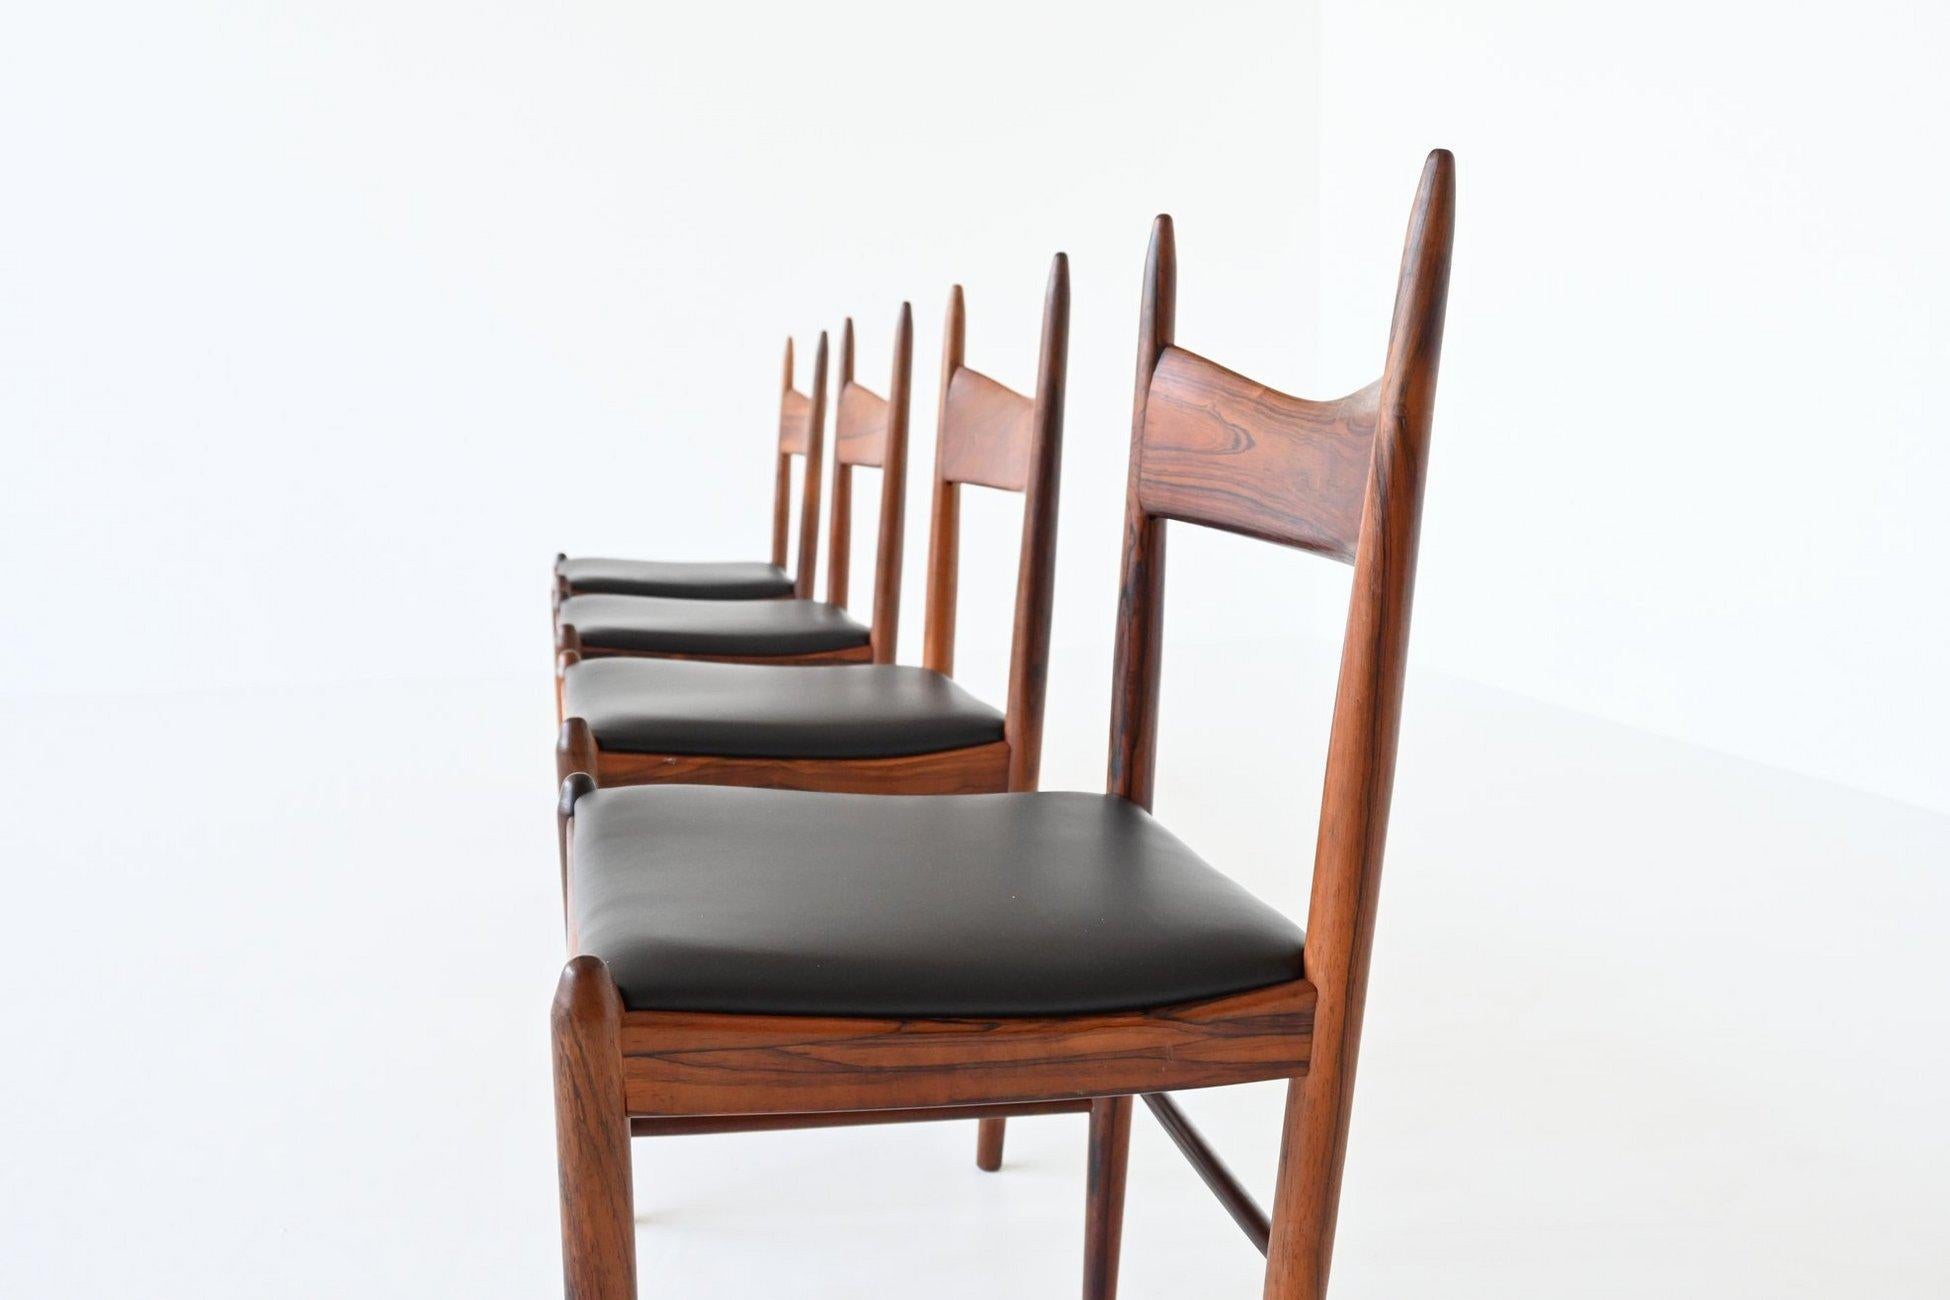 Impresionante juego de cuatro sillas de comedor diseñado por H. Vestervig Eriksen para Brdr. Tromborg, Dinamarca 1960. Estas sillas de formas asombrosas están hechas de precioso palisandro brasileño macizo veteado y los asientos están tapizados con